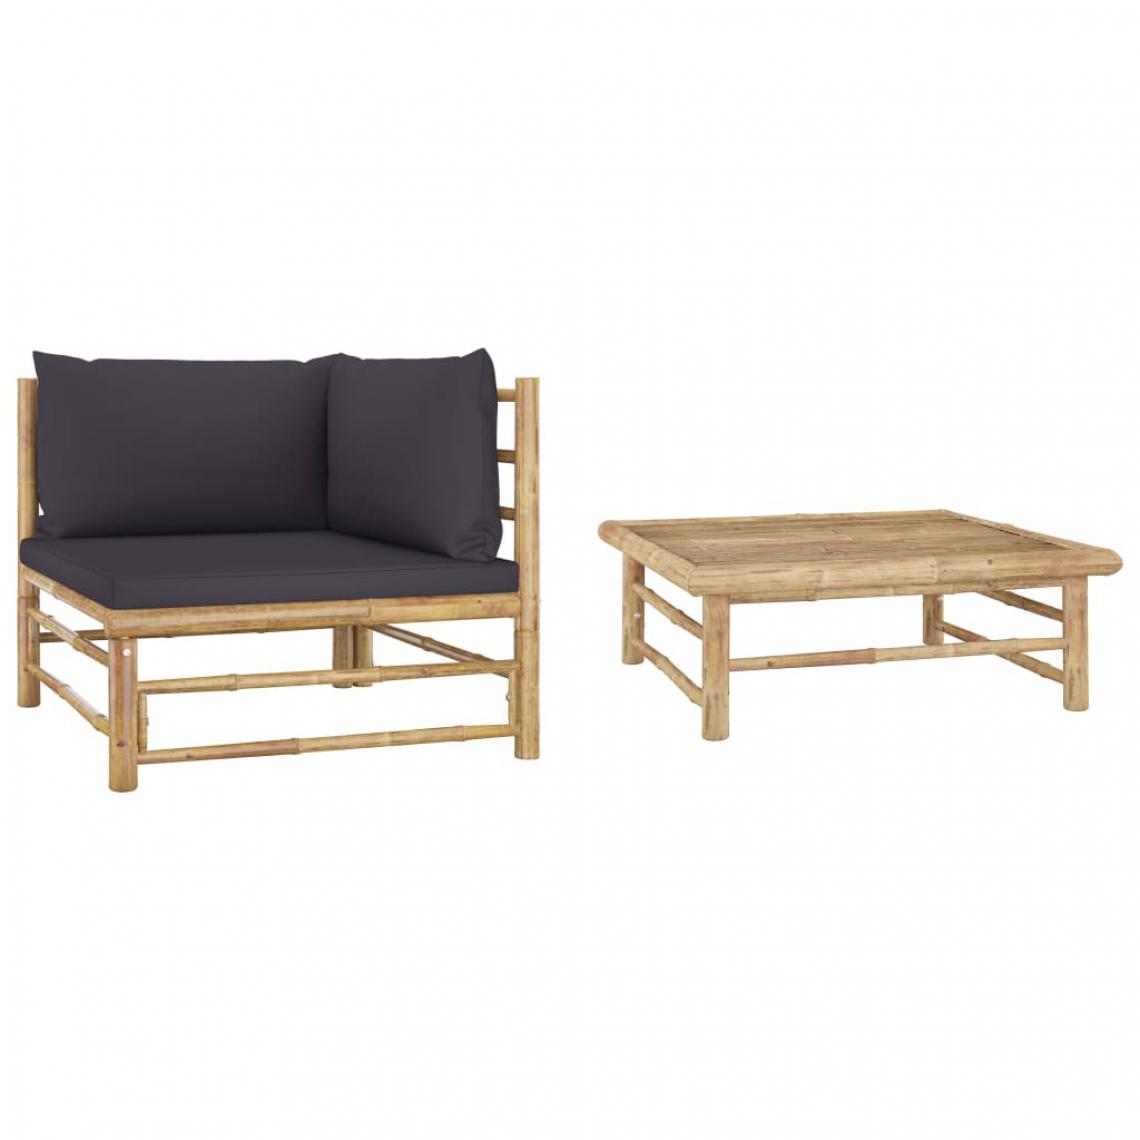 Chunhelife - Chunhelife Salon de jardin 2 pcs avec coussins gris foncé Bambou - Ensembles canapés et fauteuils